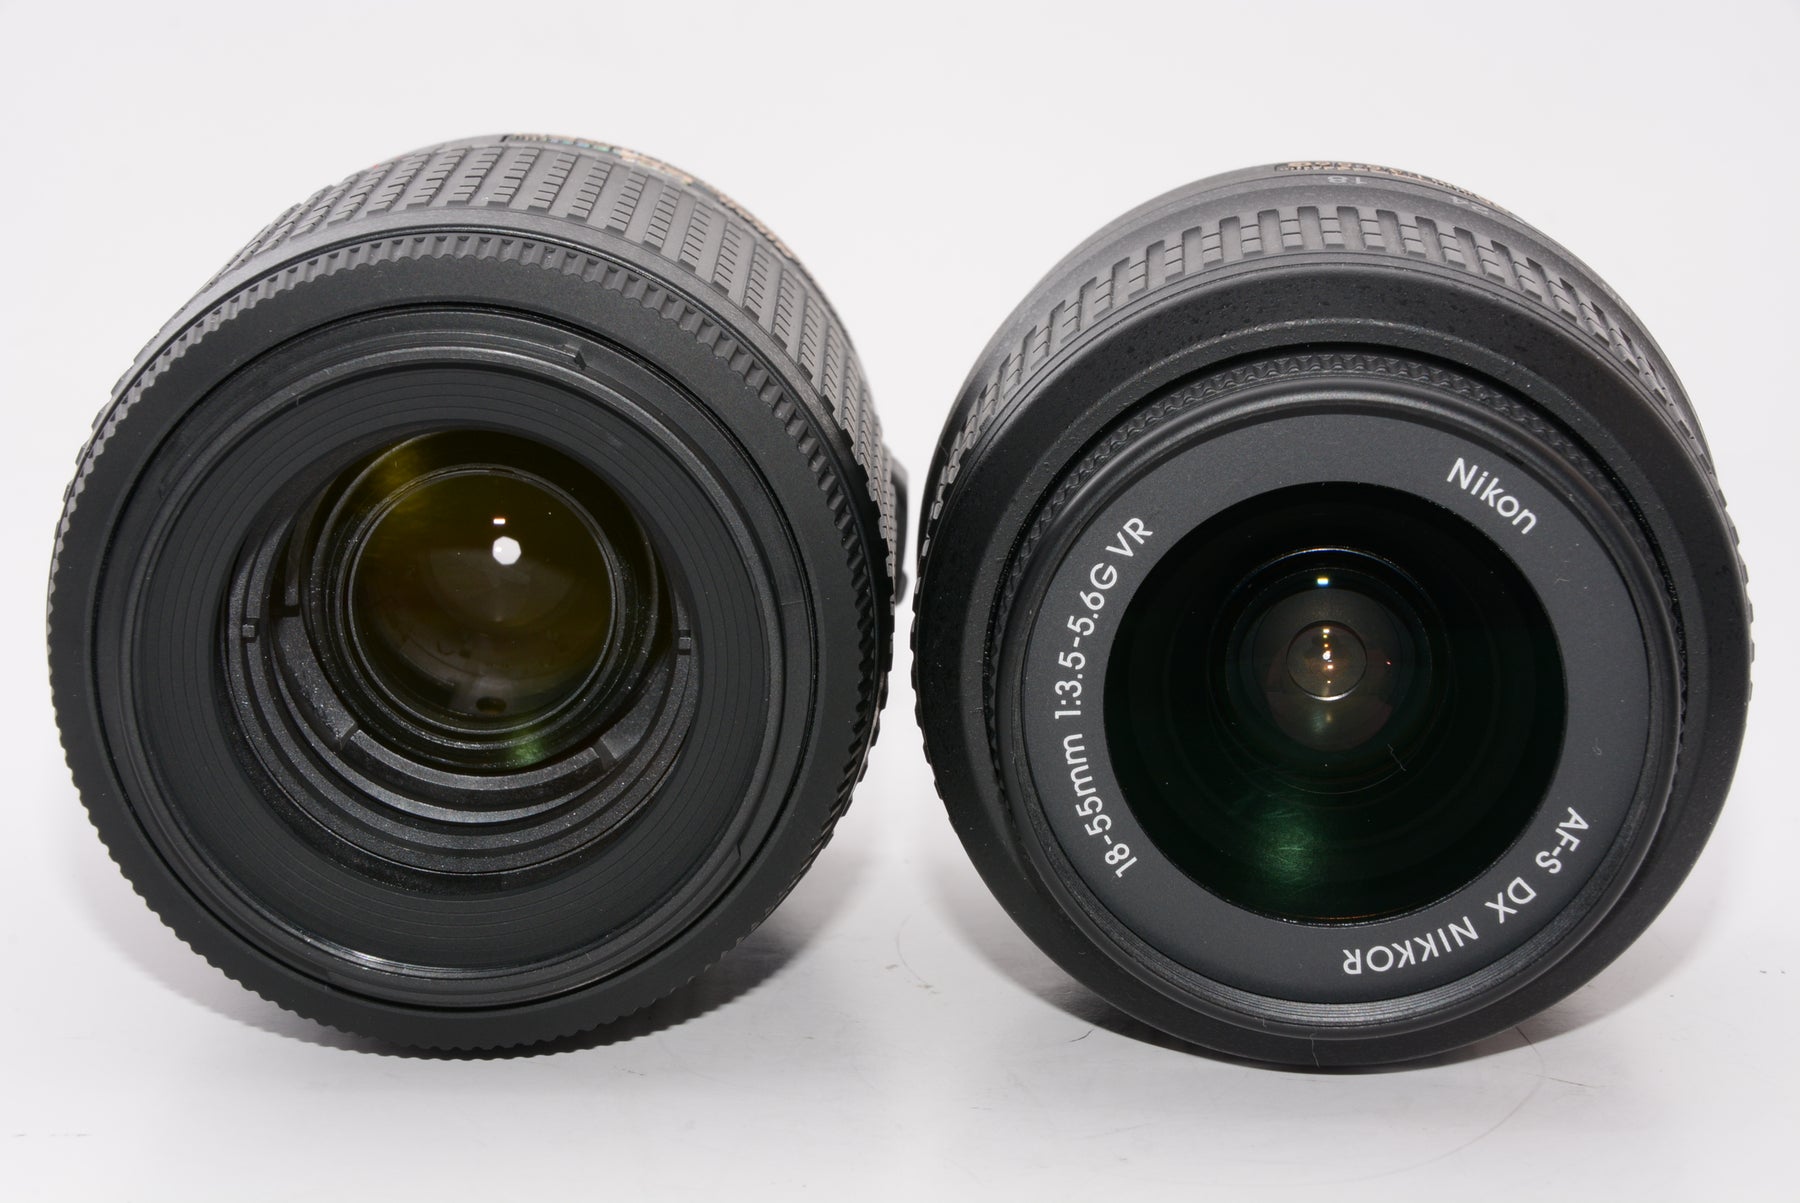 オススメ】Nikon デジタル一眼レフカメラ D3200 200mmダブルズームキット 18-55mm/55-200mm付属 ブラック D